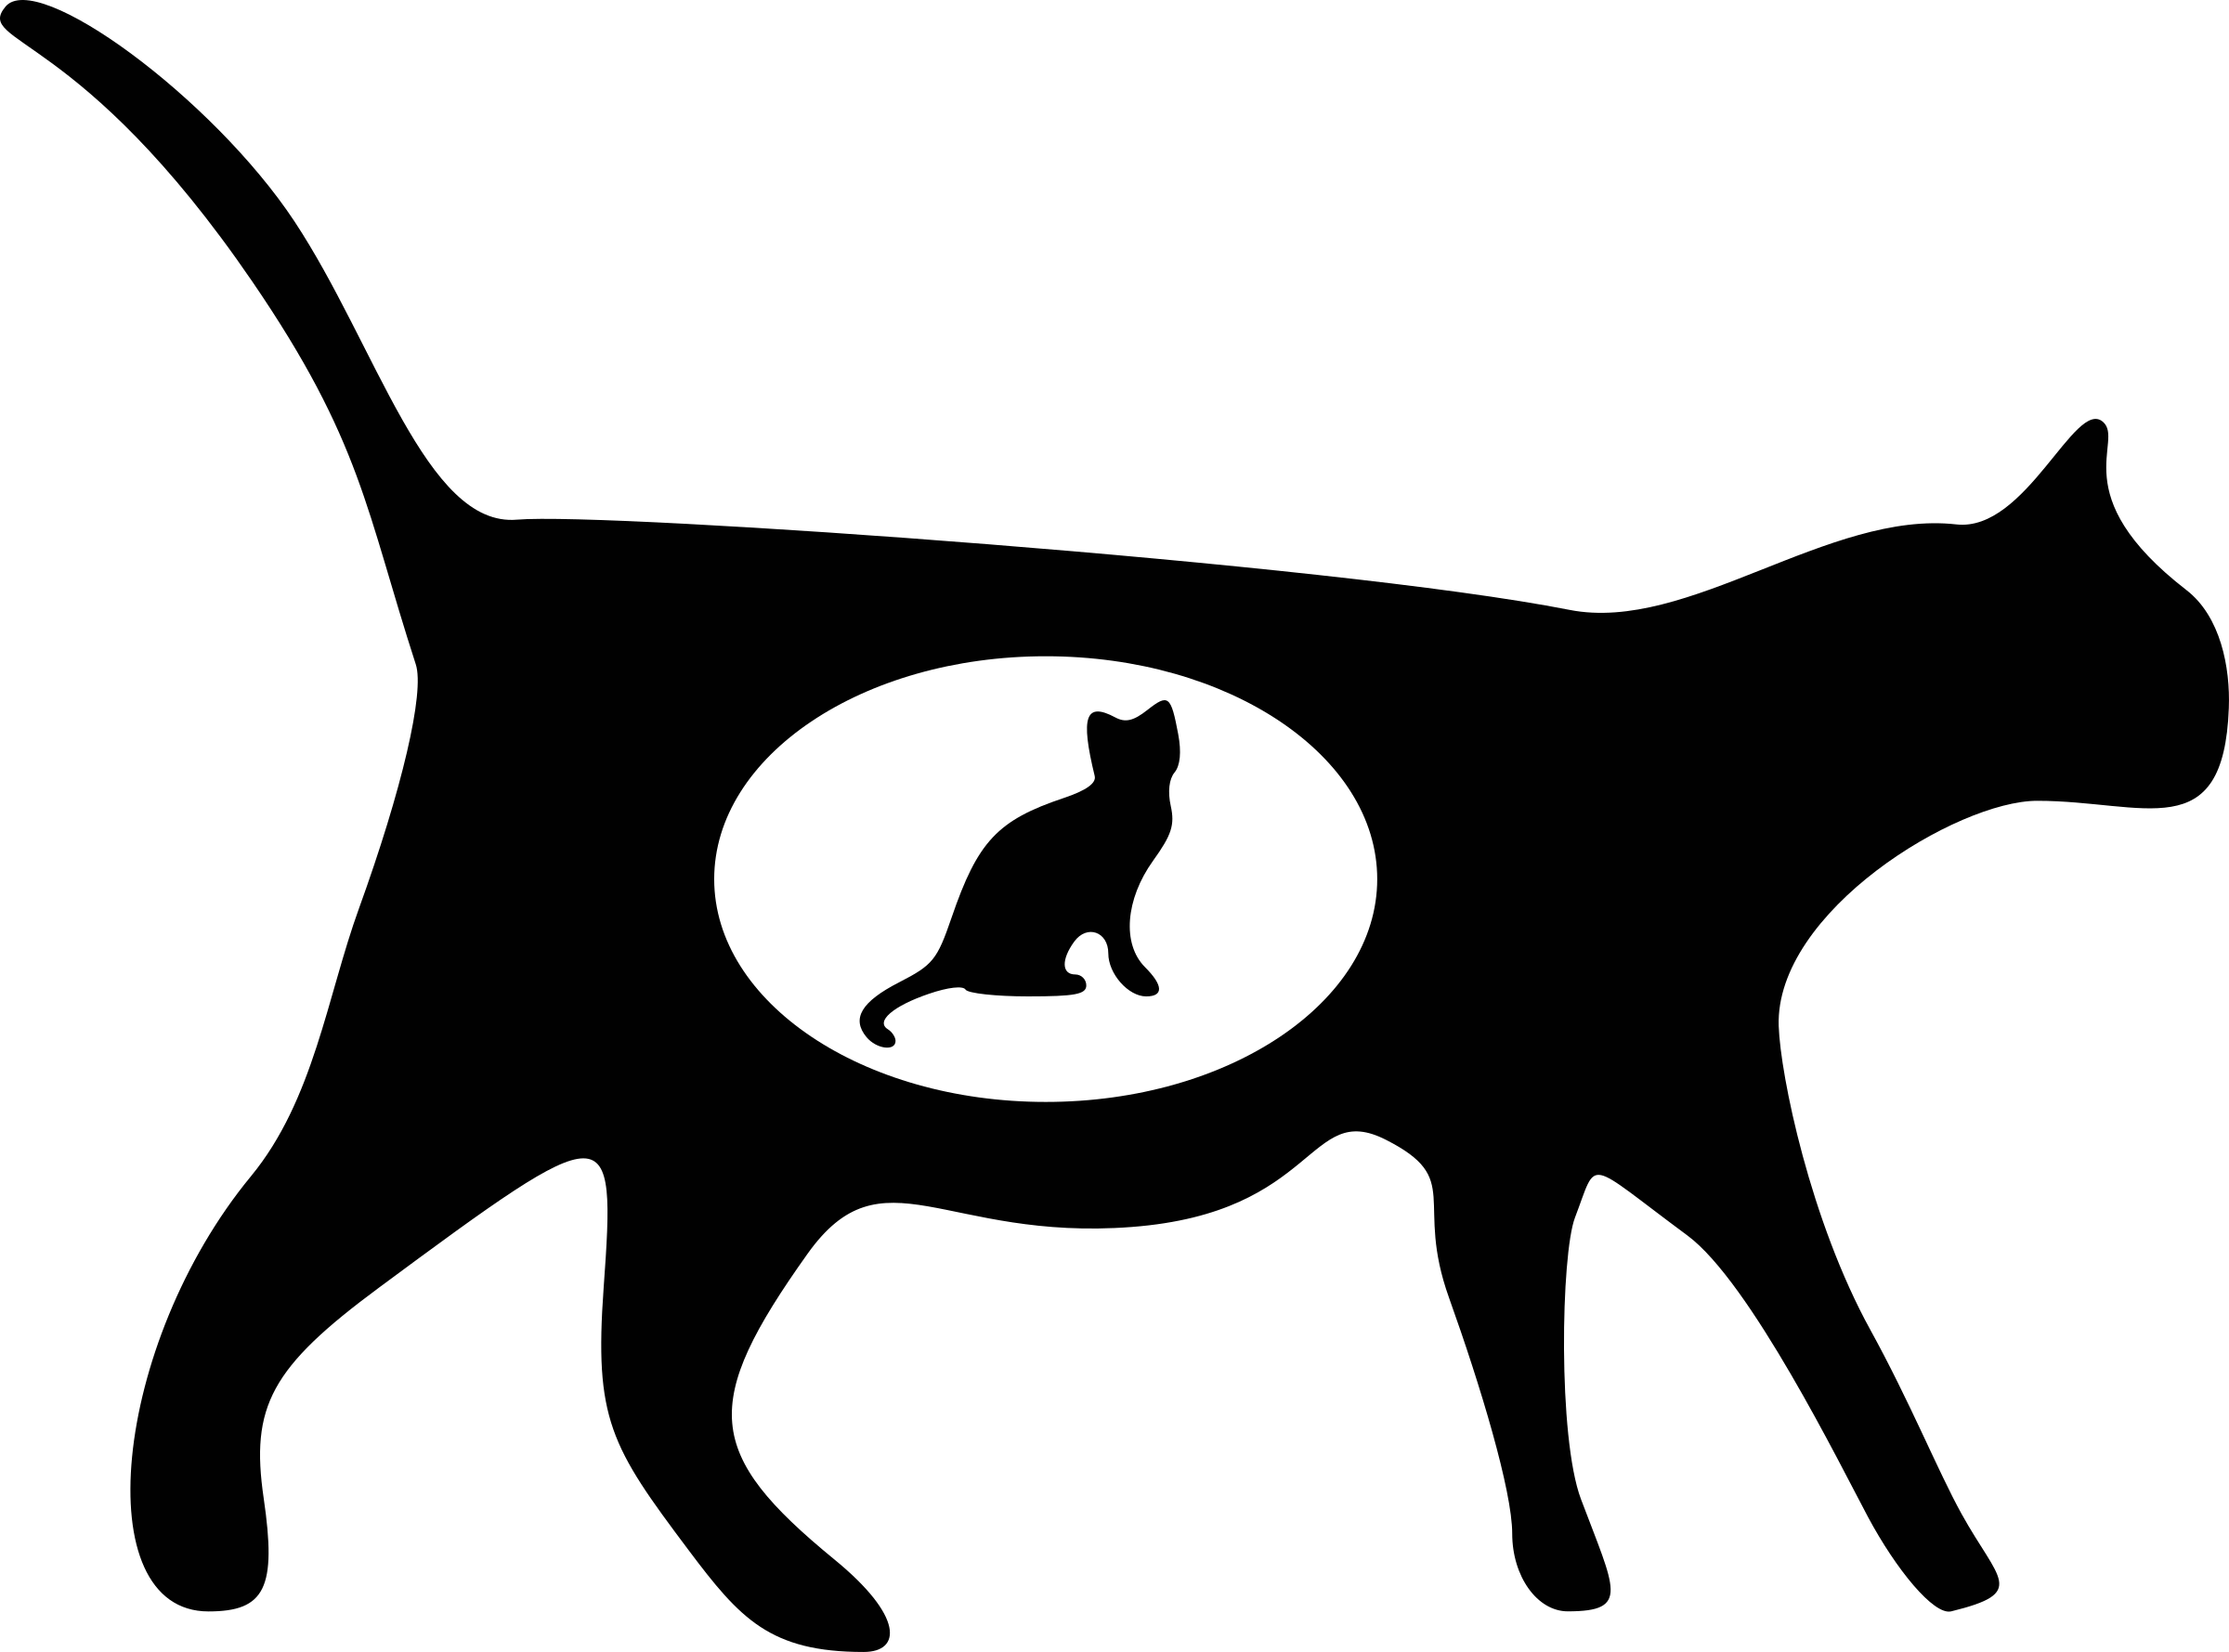 Cat Icons 1 - Black Cat Transparent Background (2400x1779)